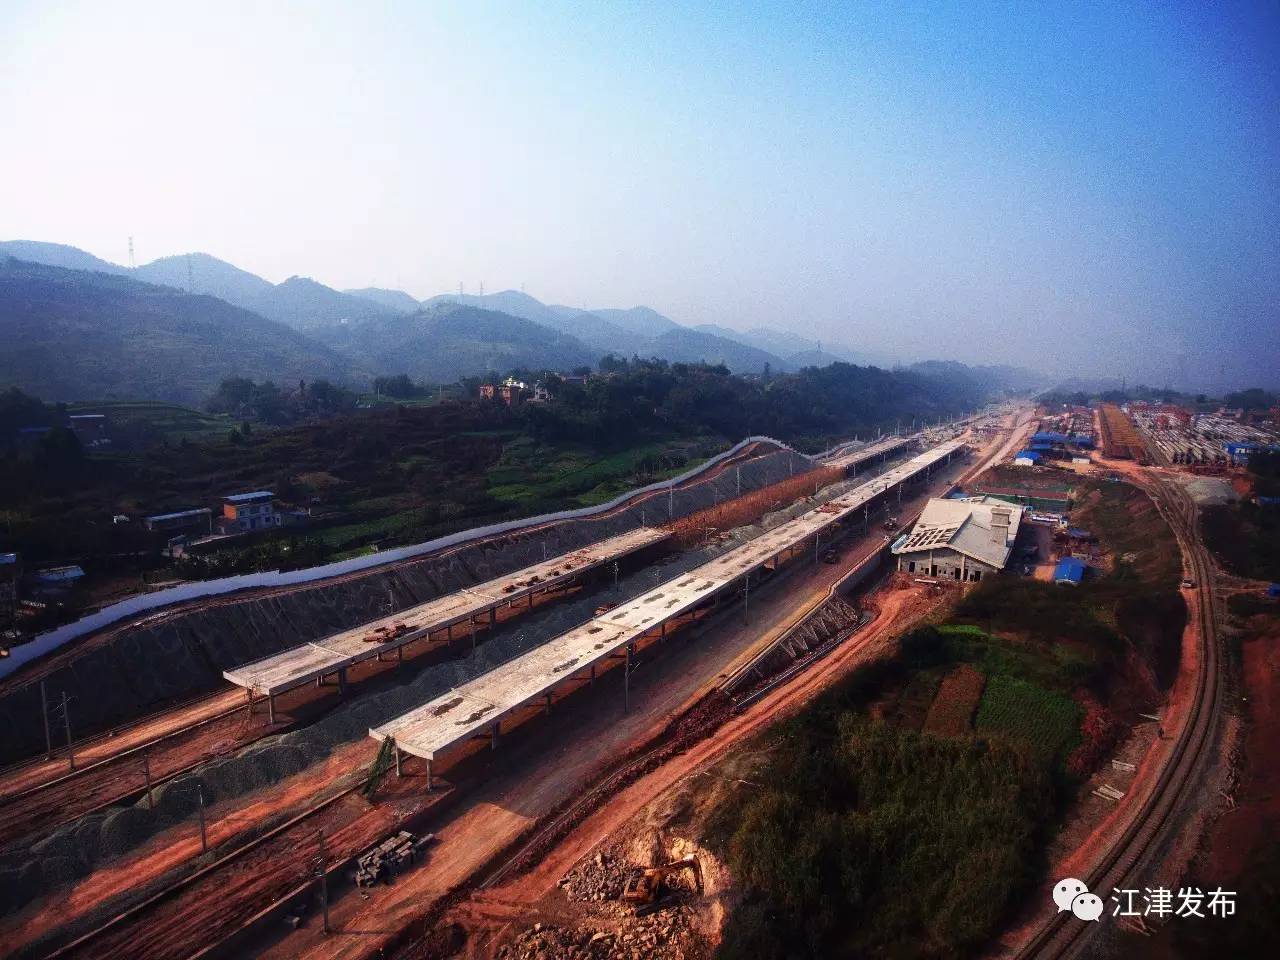 江津区珞璜工业园打造大枢纽的重要一环,而渝黔铁路新线珞璜南站作为